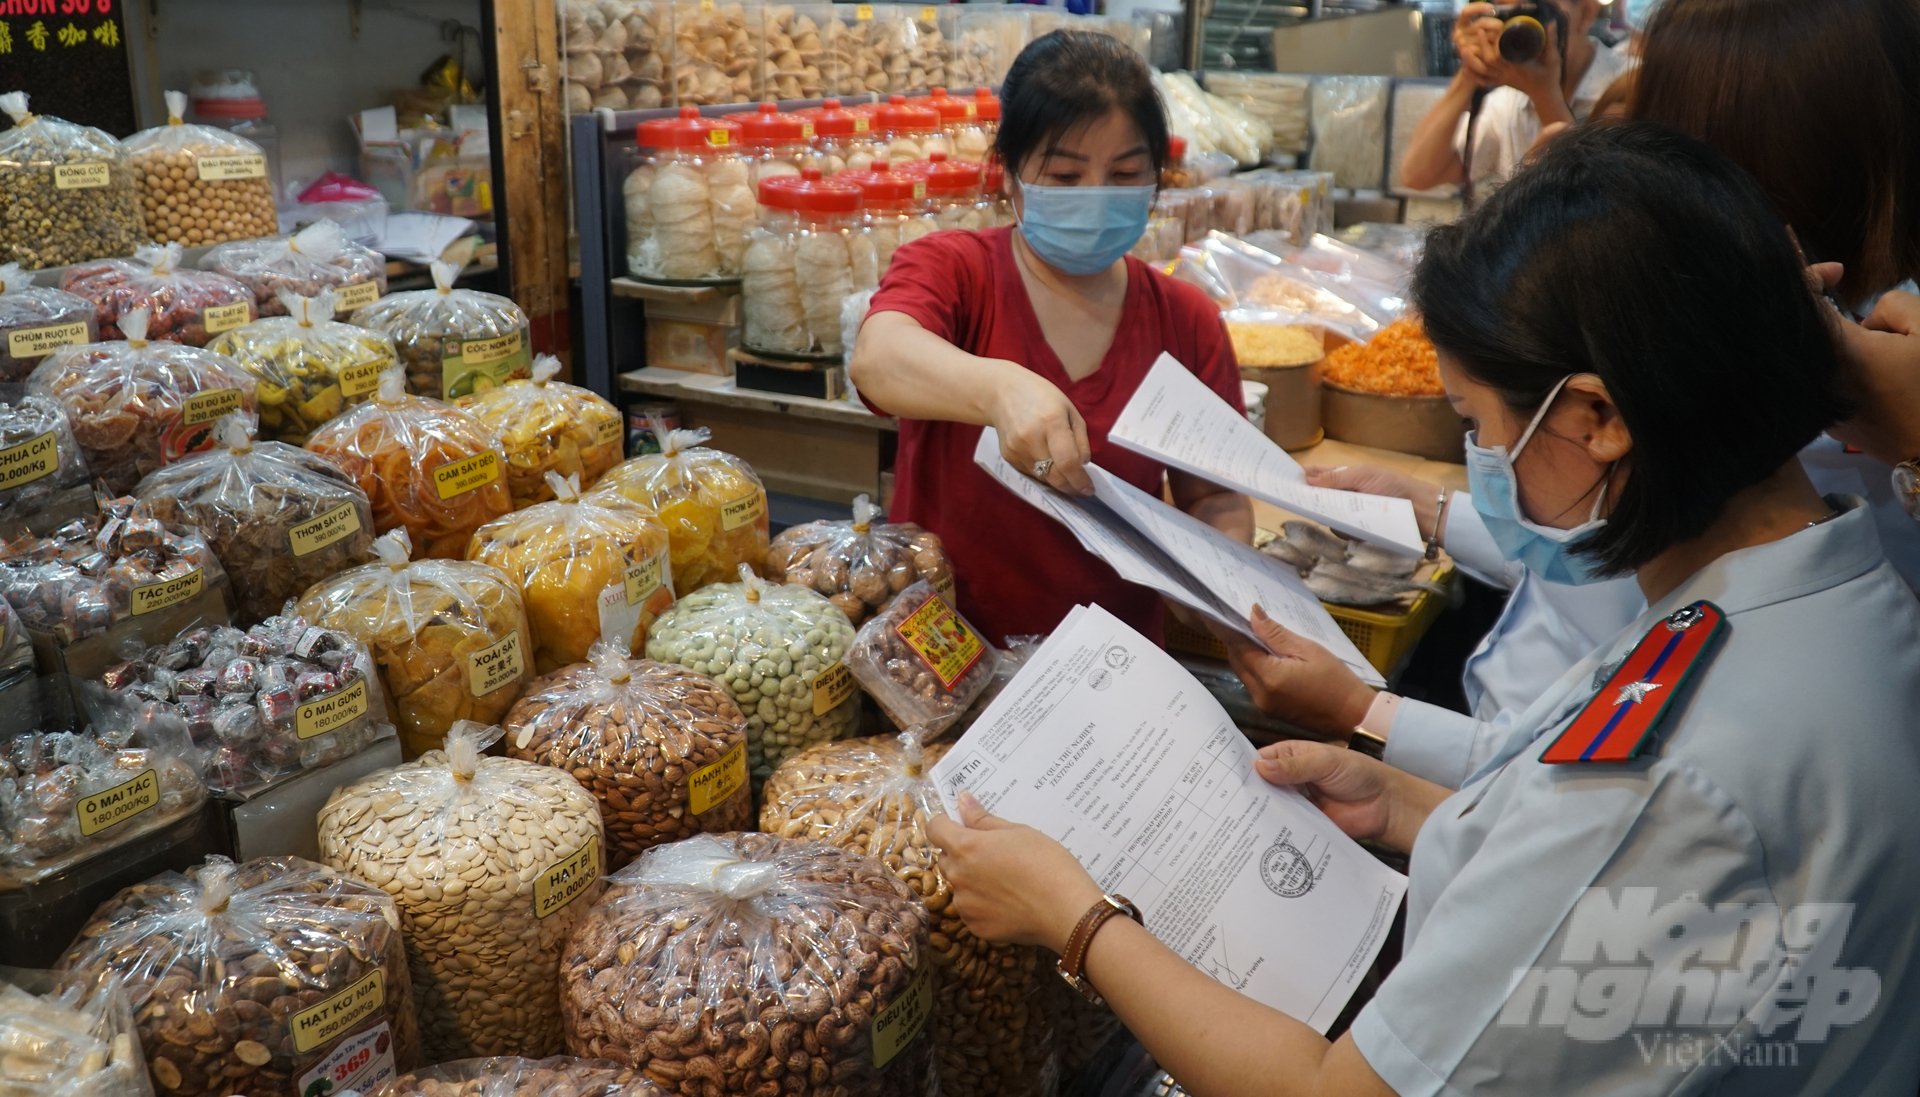 Kiểm tra an toàn thực phẩm là một trong những hoạt động thường xuyên của BQL ATTP TP.HCM. Ảnh: Nguyễn Thủy.